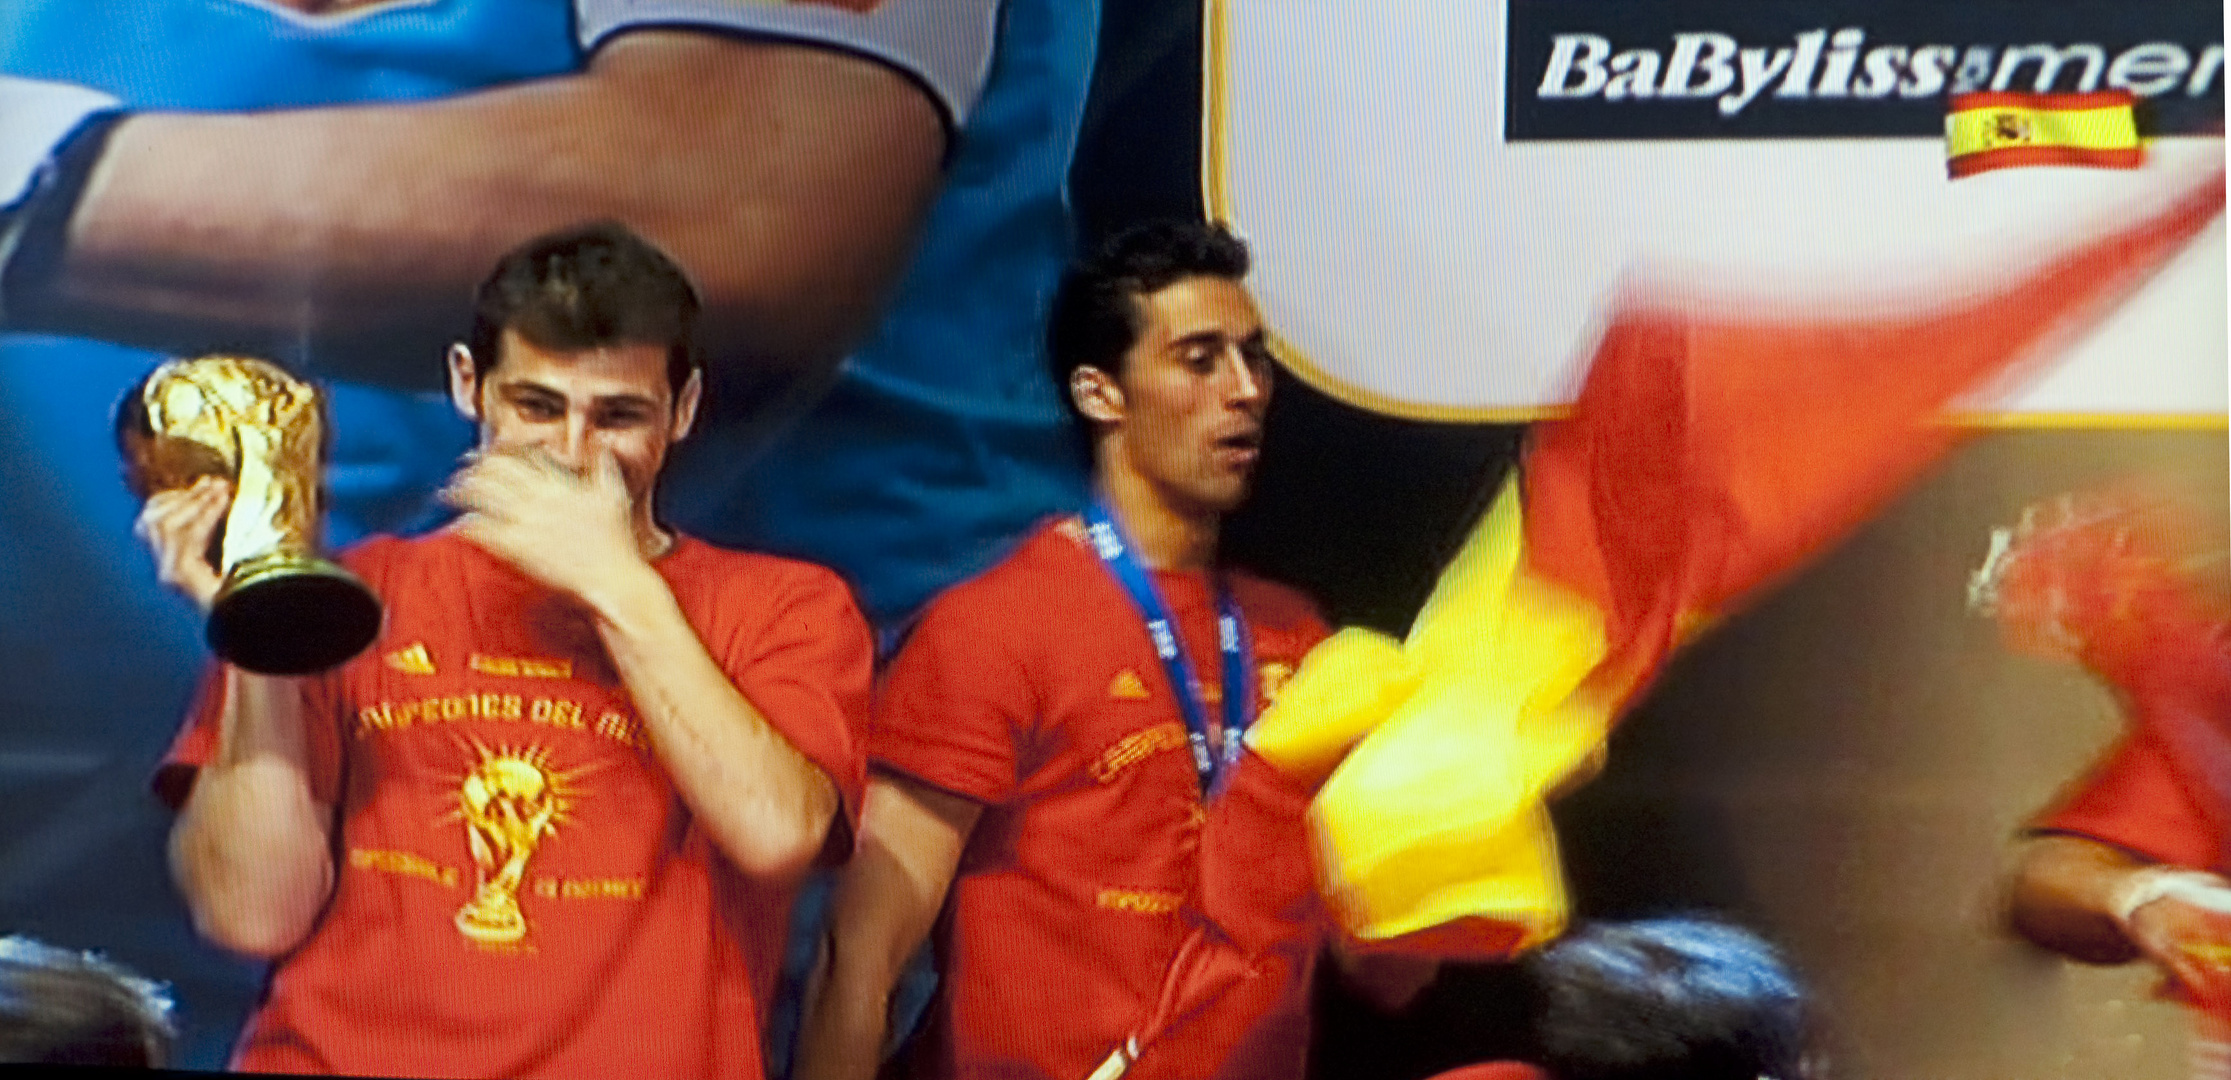 La copa. Las lágrimas de Casillas, el mejor portero del mundo